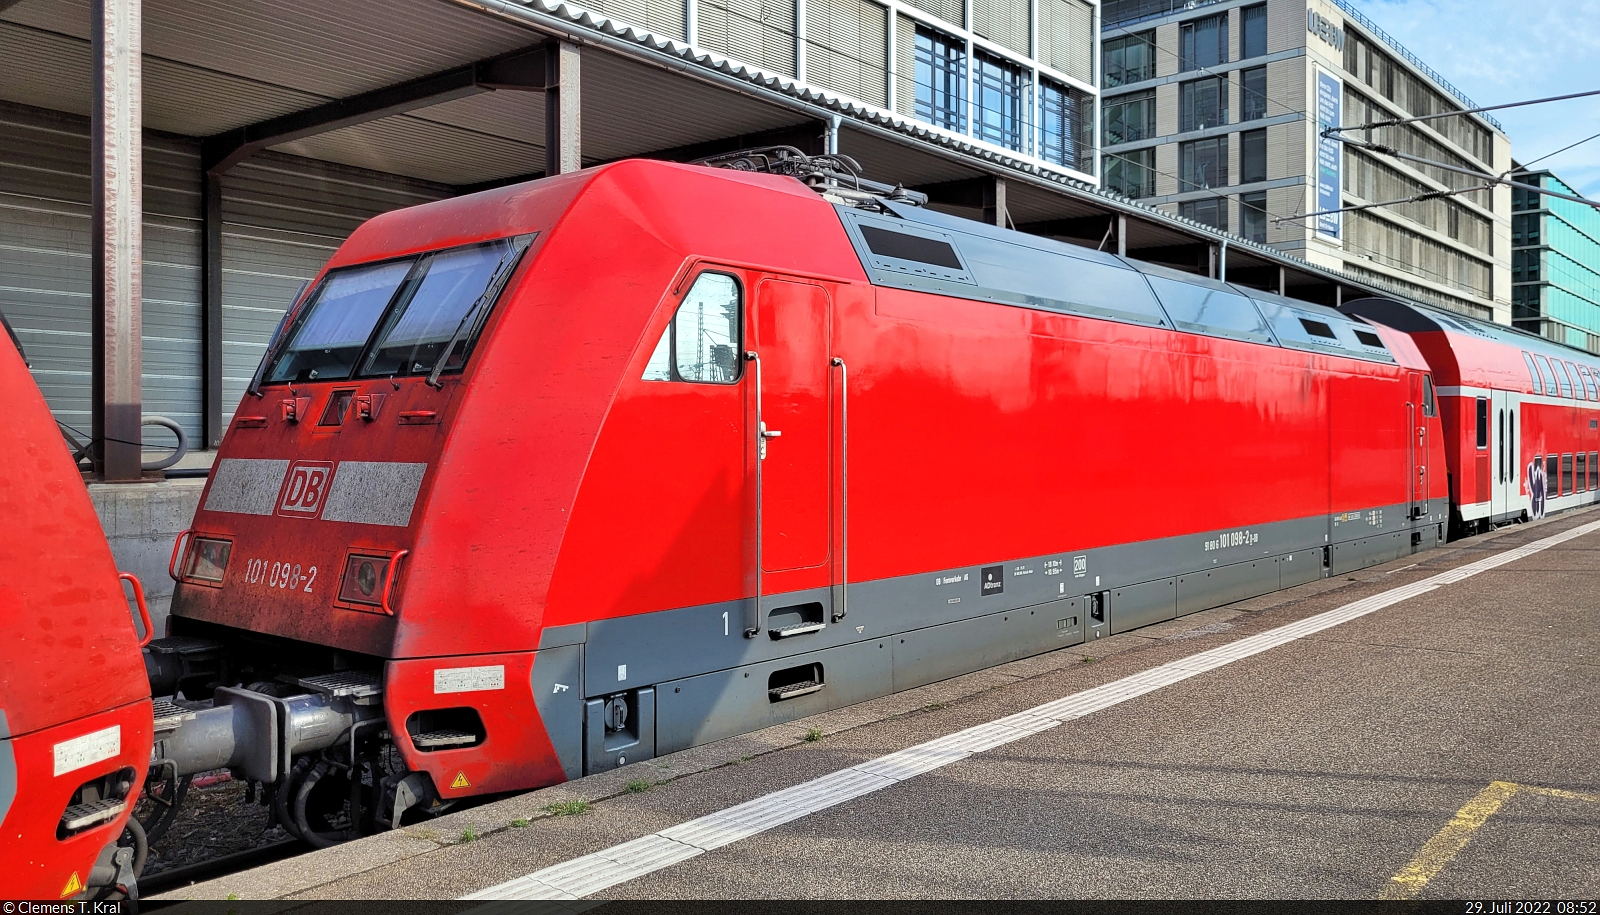 Die Dritte im Bunde eines PbZ war 101 098-2. Sie wurde in Stuttgart Hbf an Gleis 1 portraitiert, bevor es möglicherweise bald zu spät ist.

🧰 DB Fernverkehr
🚝 PbZ 2461 Frankfurt(Main)Hbf–München-Pasing Bbf
🕓 29.7.2022 | 8:52 Uhr